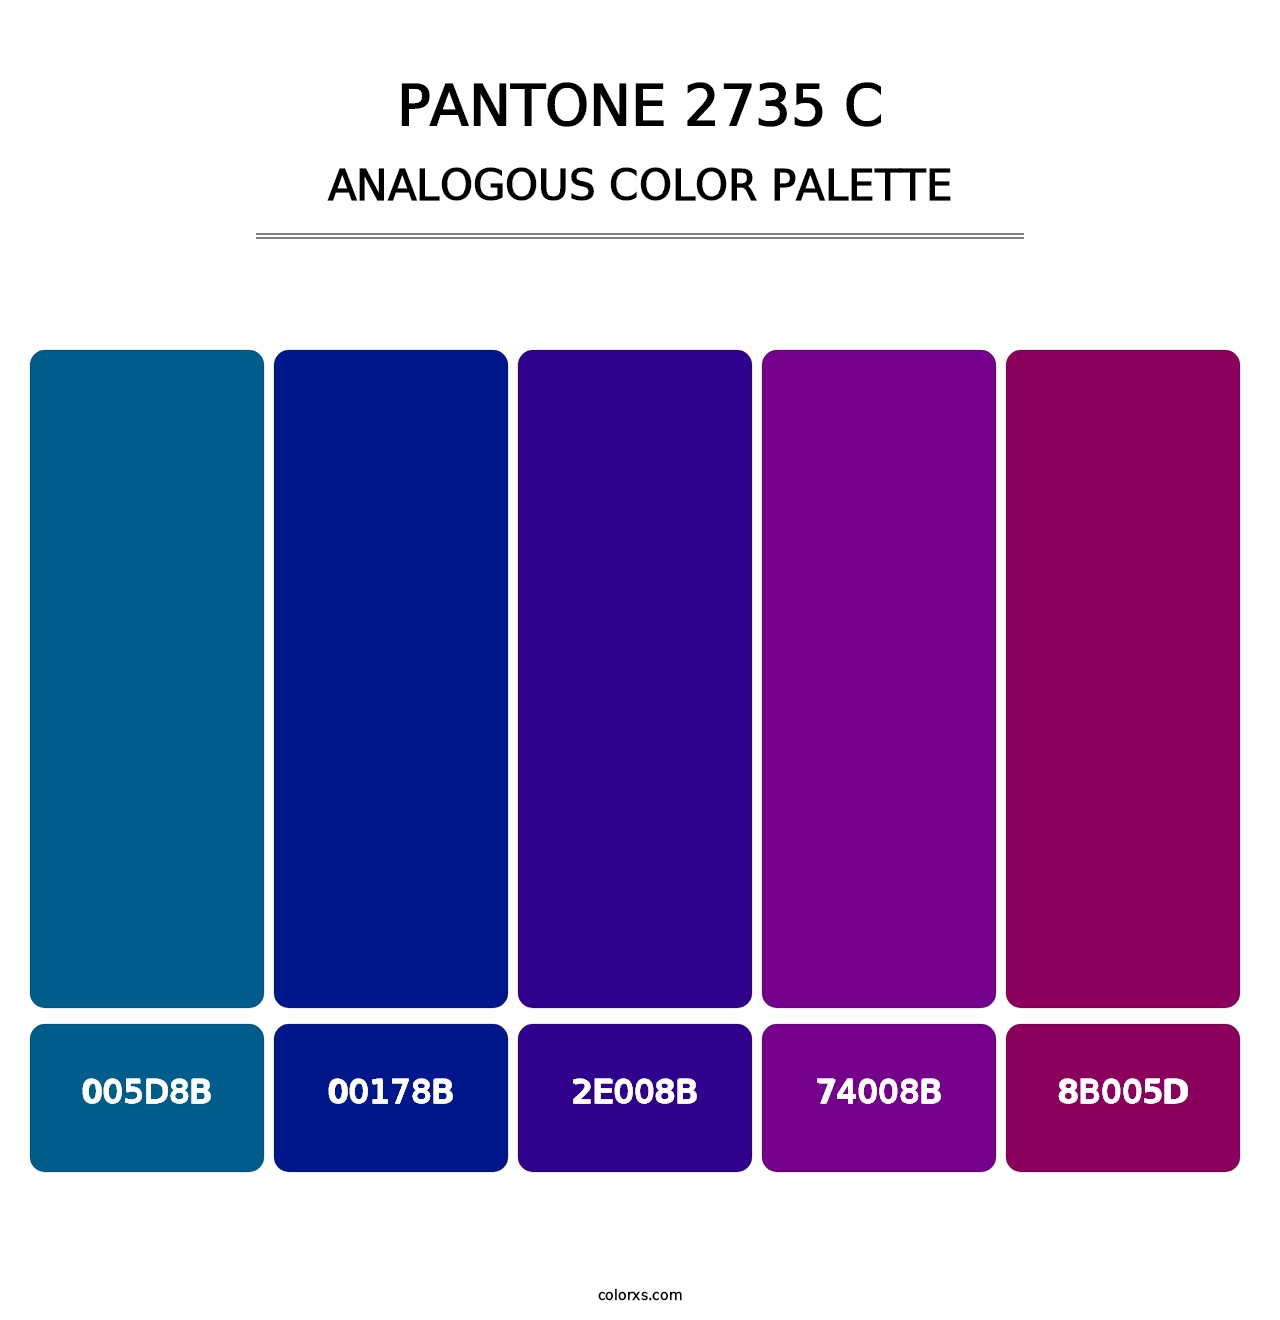 PANTONE 2735 C - Analogous Color Palette